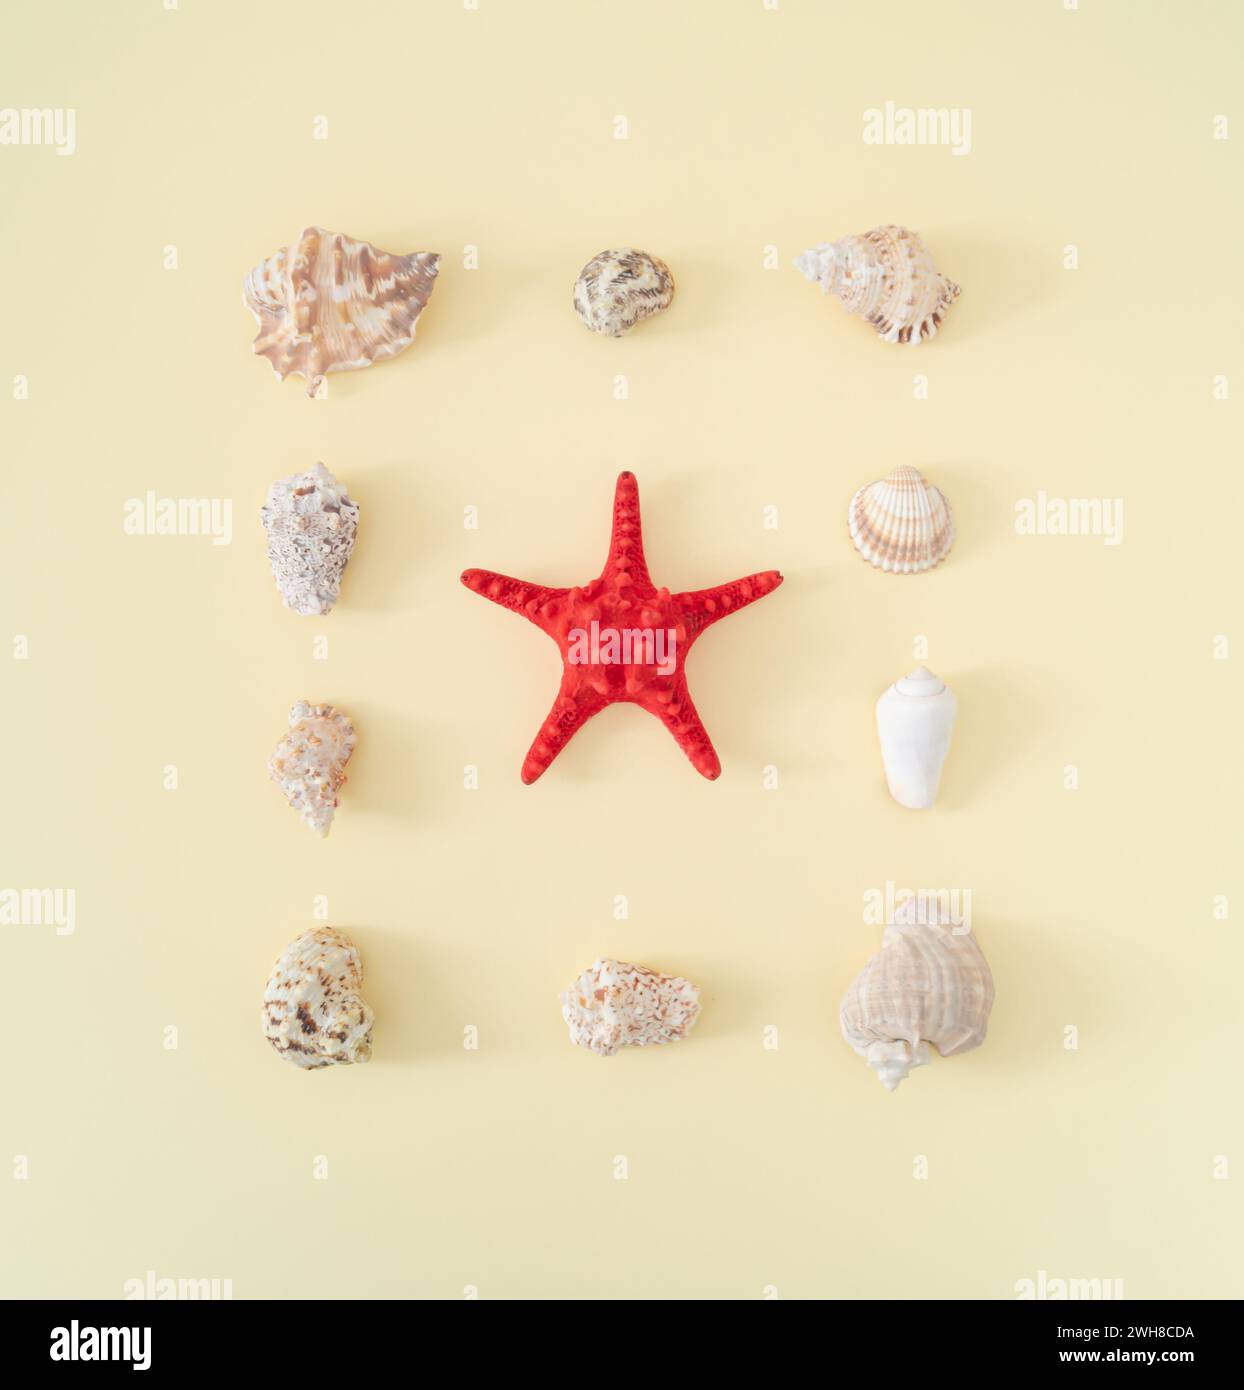 Arrangement créatif de coquillages d'été sur fond crème clair avec étoile de mer rouge. Concept estival minimal. Idée esthétique de coquillages de mer à la mode. Pose à plat Banque D'Images